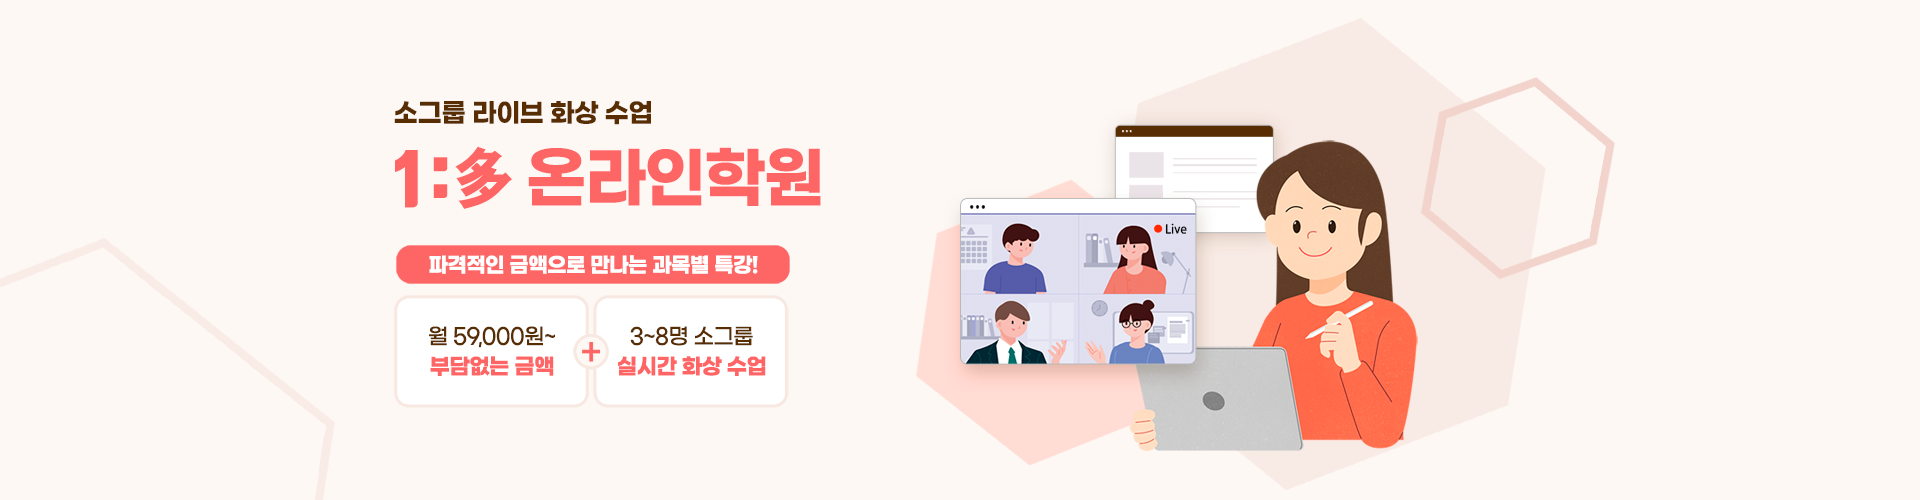 소그룹 프리미엄 라이브 화상 수업 온라인 학원, 그룹 과외